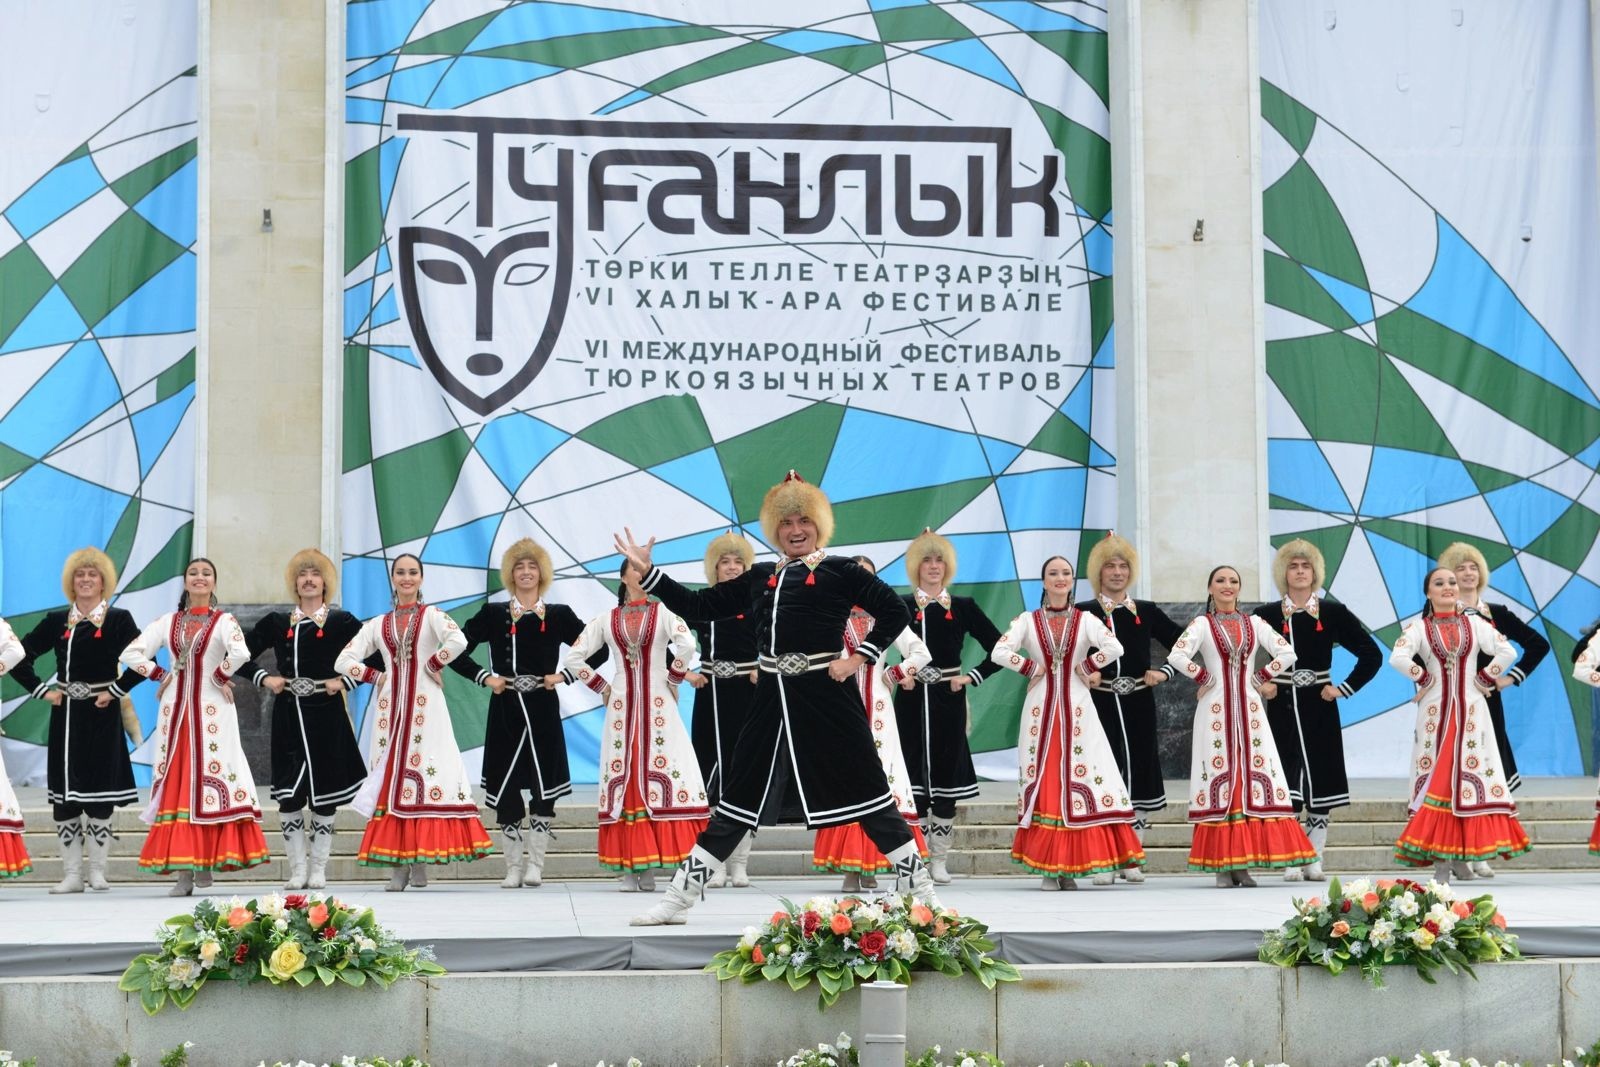 В Уфе пройдет фестиваль национальных театров Туганлык